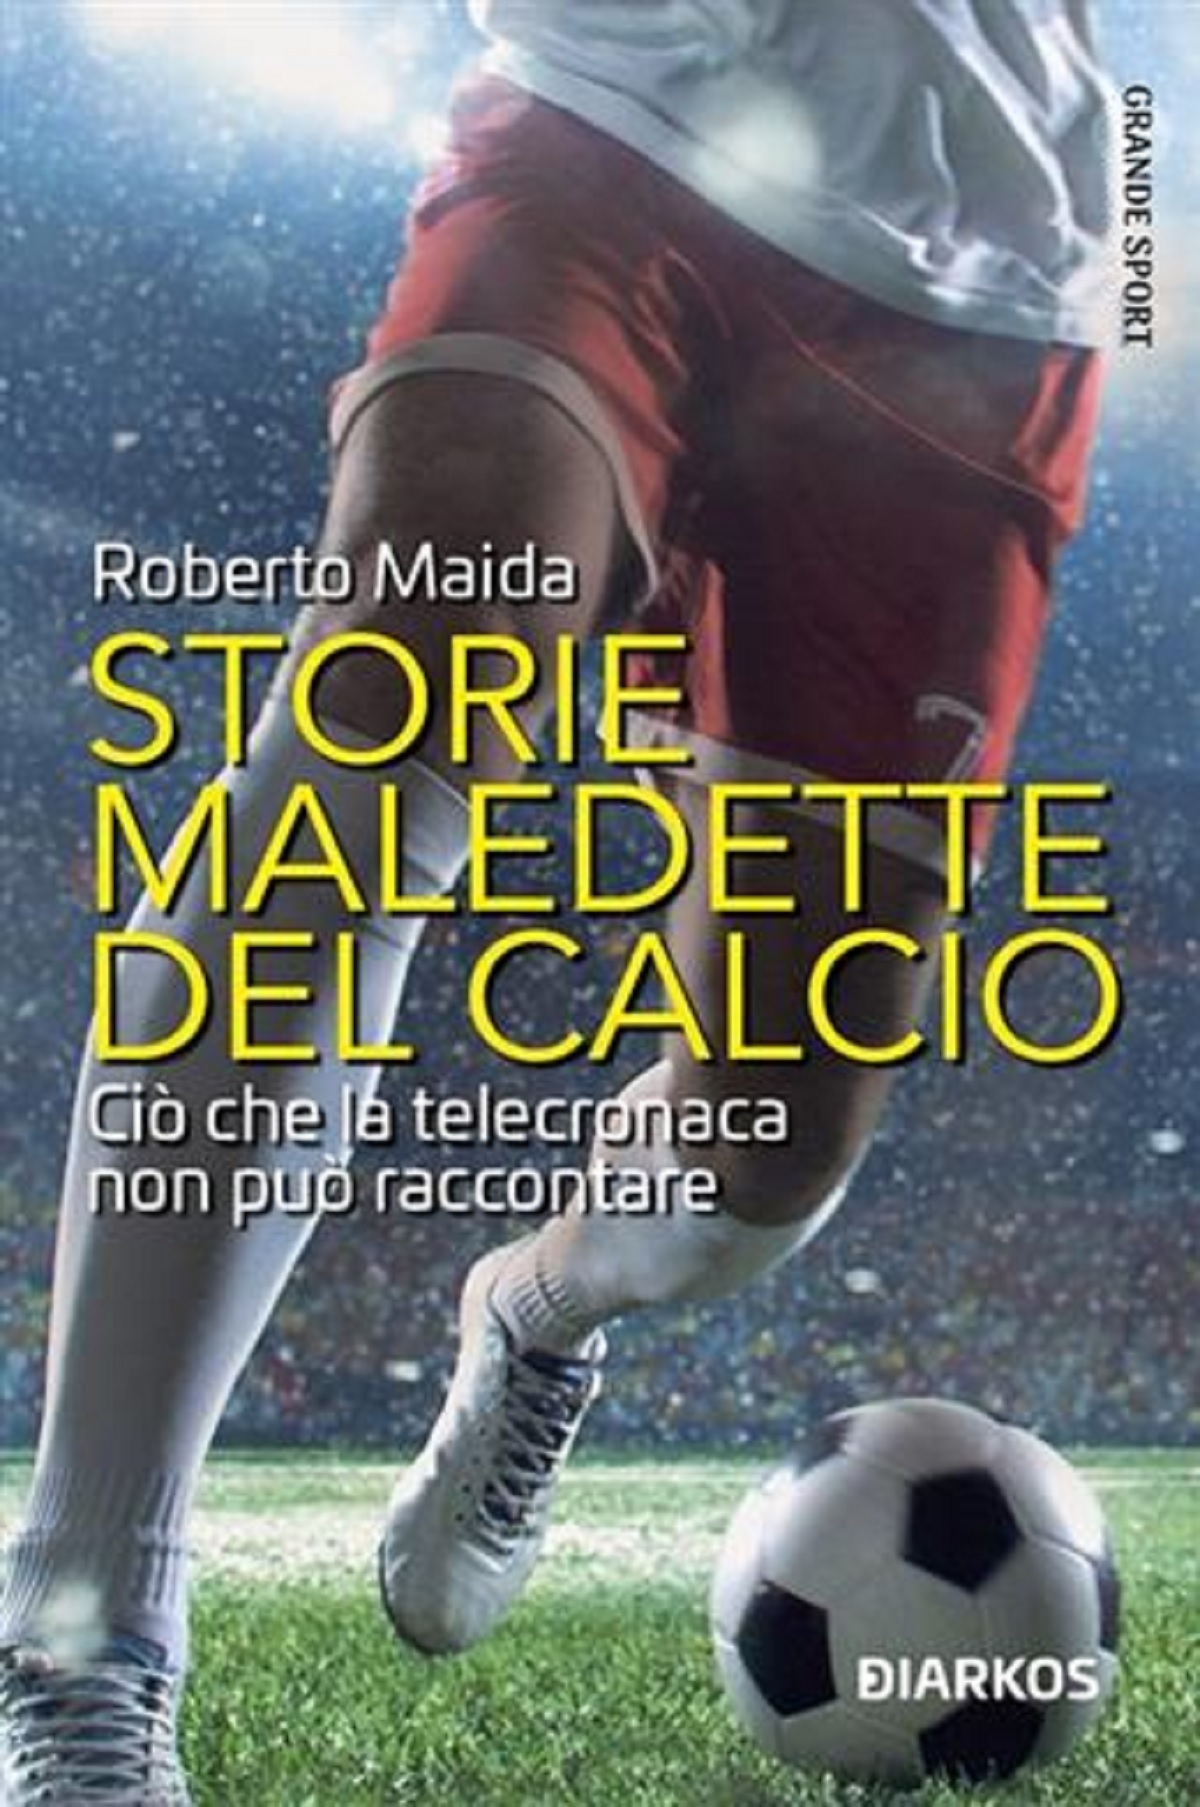 Roberto Maida firma le “Storie maledette del calcio”